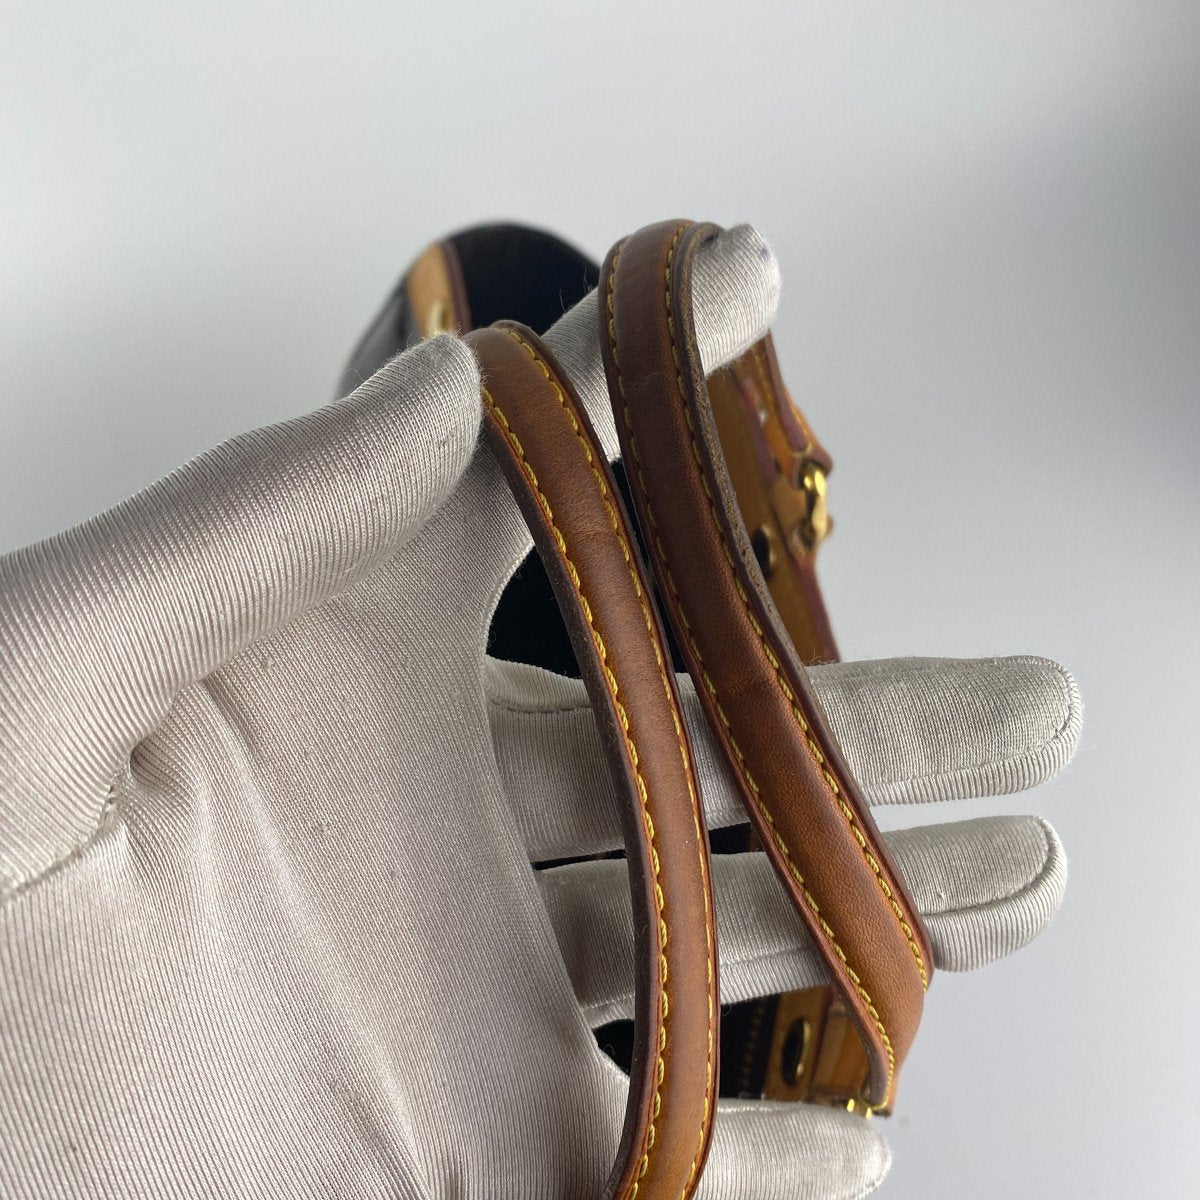 Bréa patent leather handbag Louis Vuitton Black in Patent leather